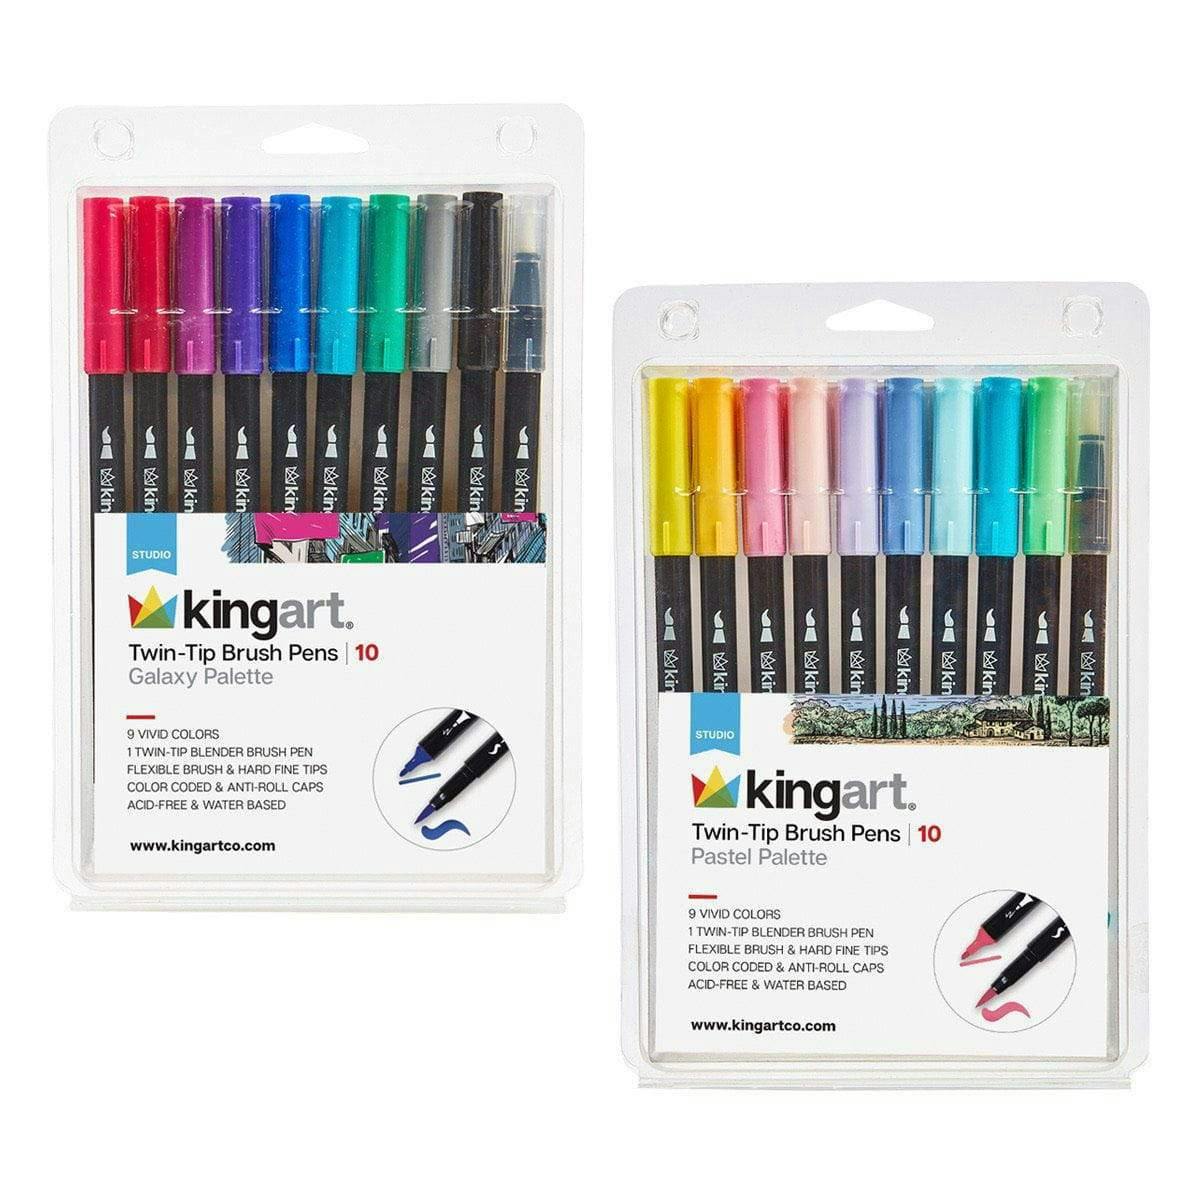 Kingart Studio Acrylic Craft Paint, 60ml Bottle, Set of 12 Metallic Colors